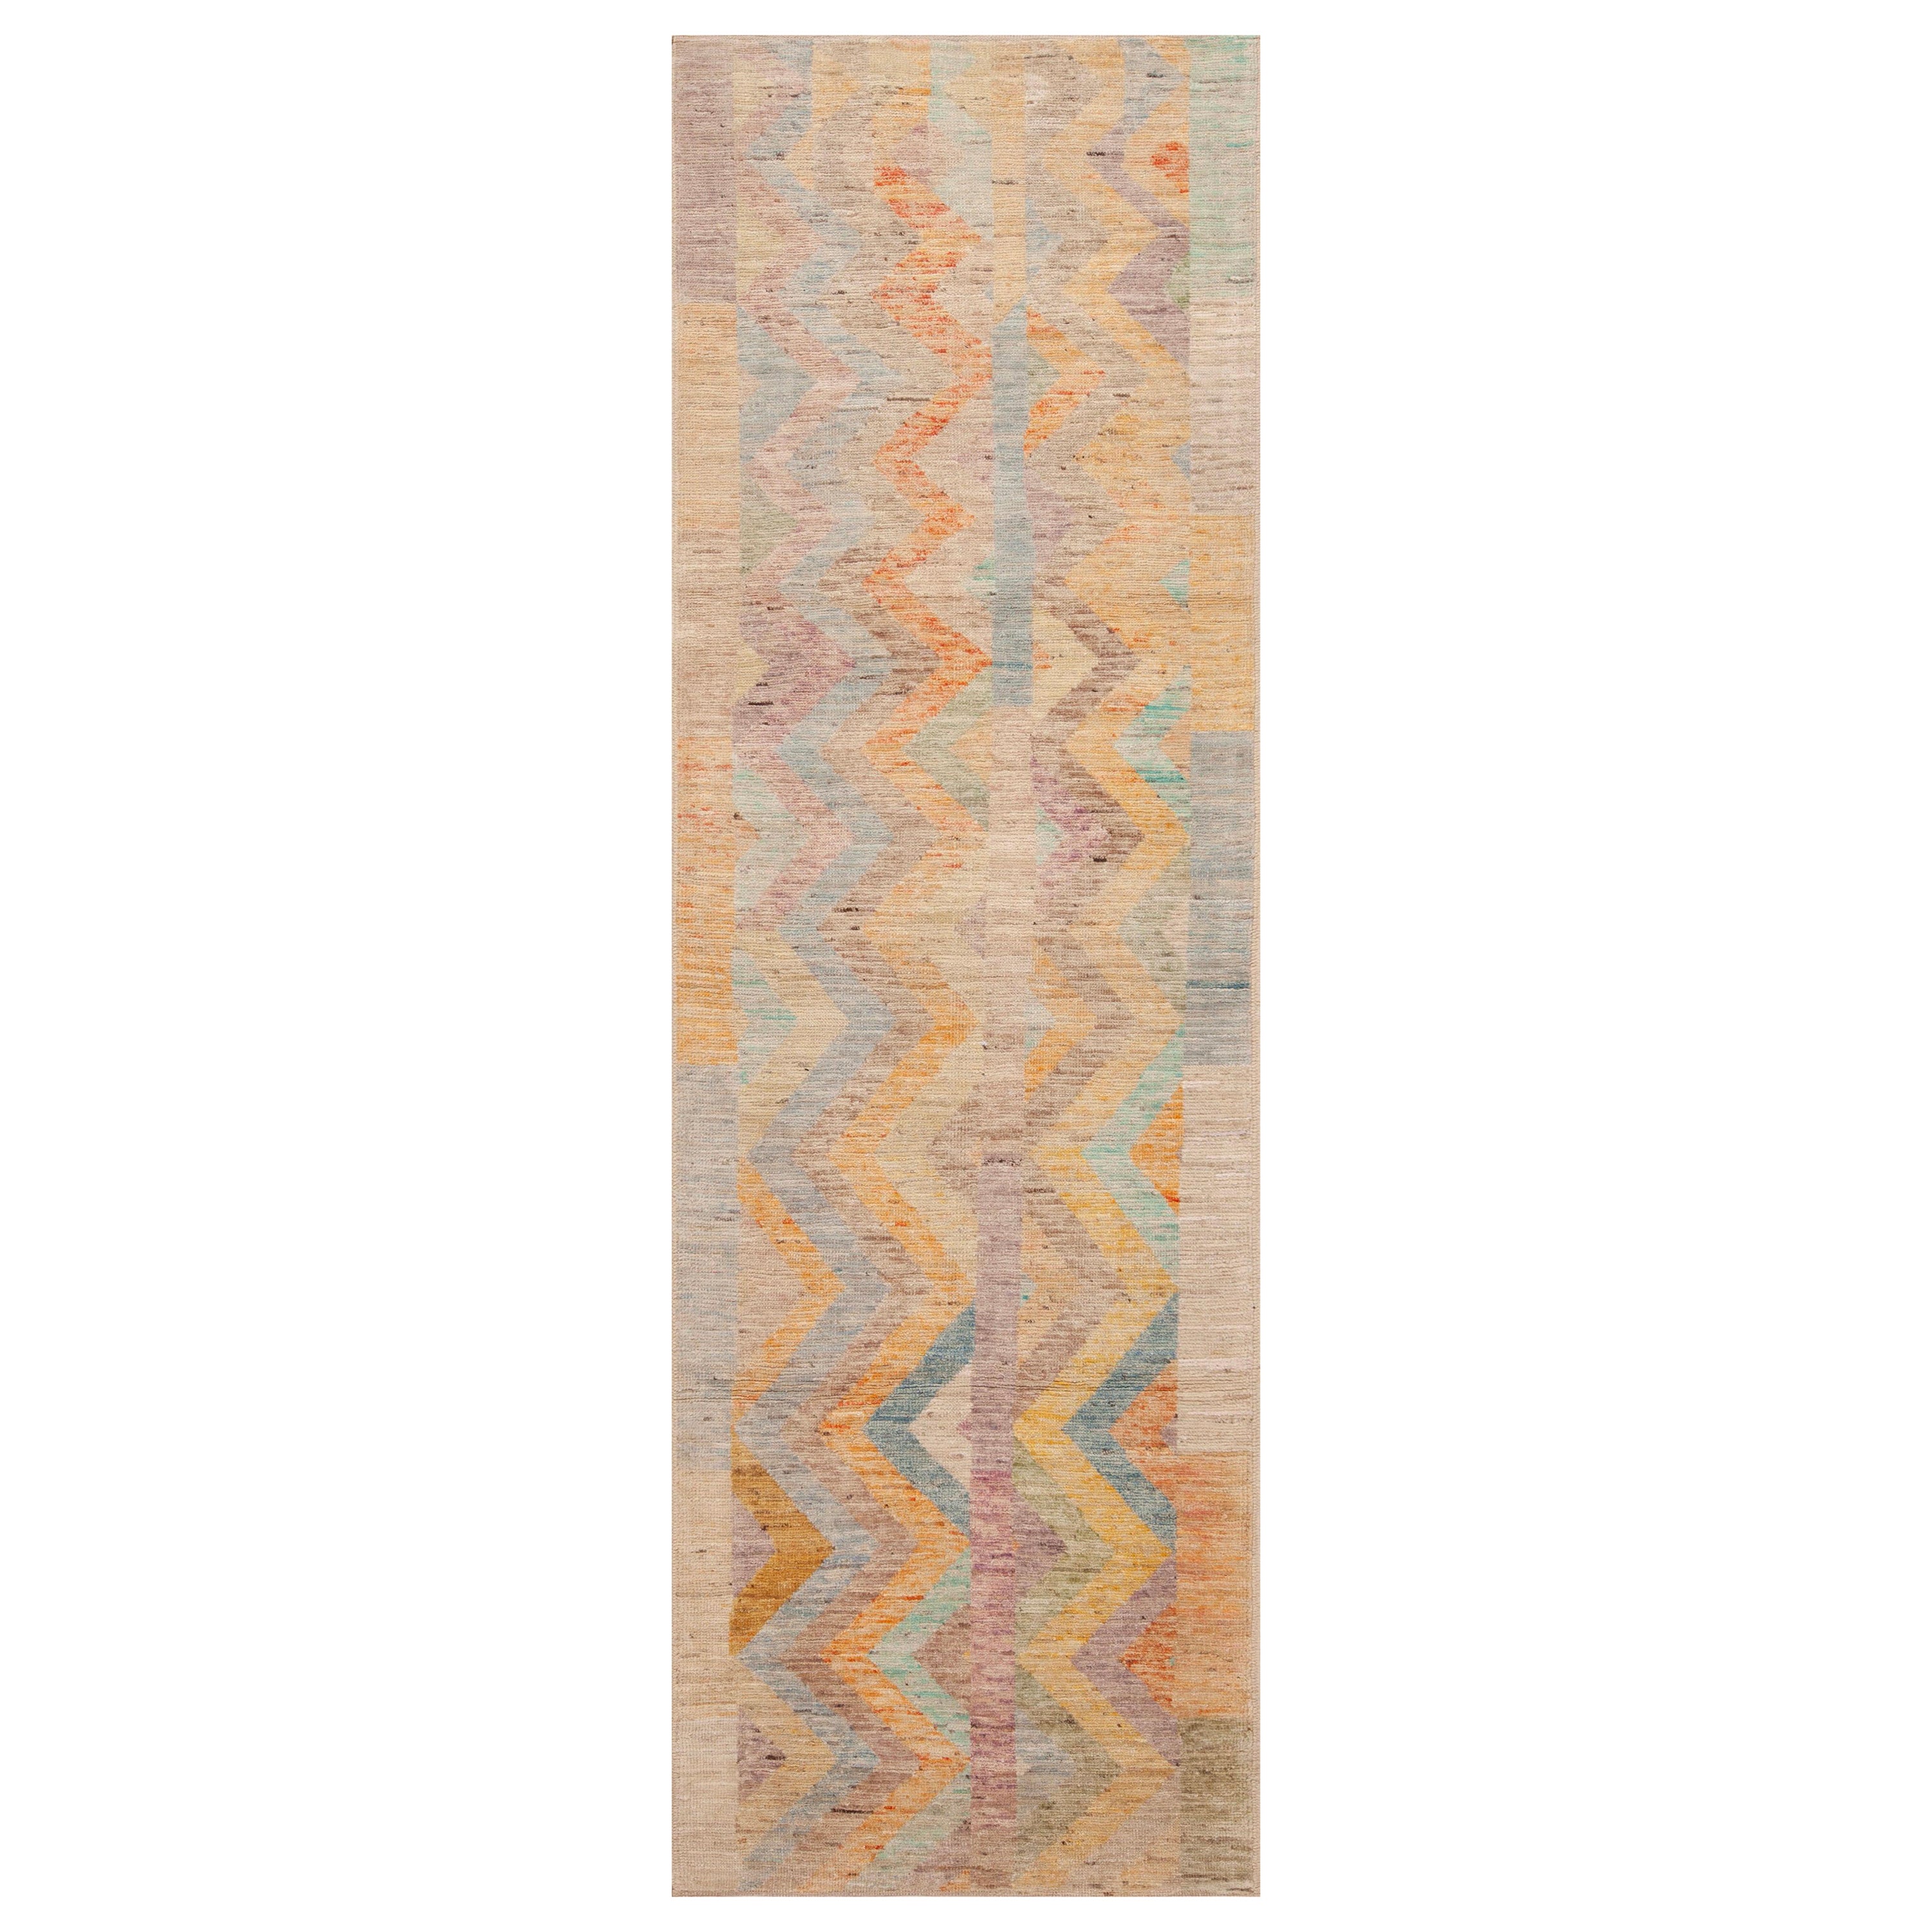  Tapis de course à chevrons tribal et géométrique coloré de la collection Nazmiyal, 3' x 9'7"